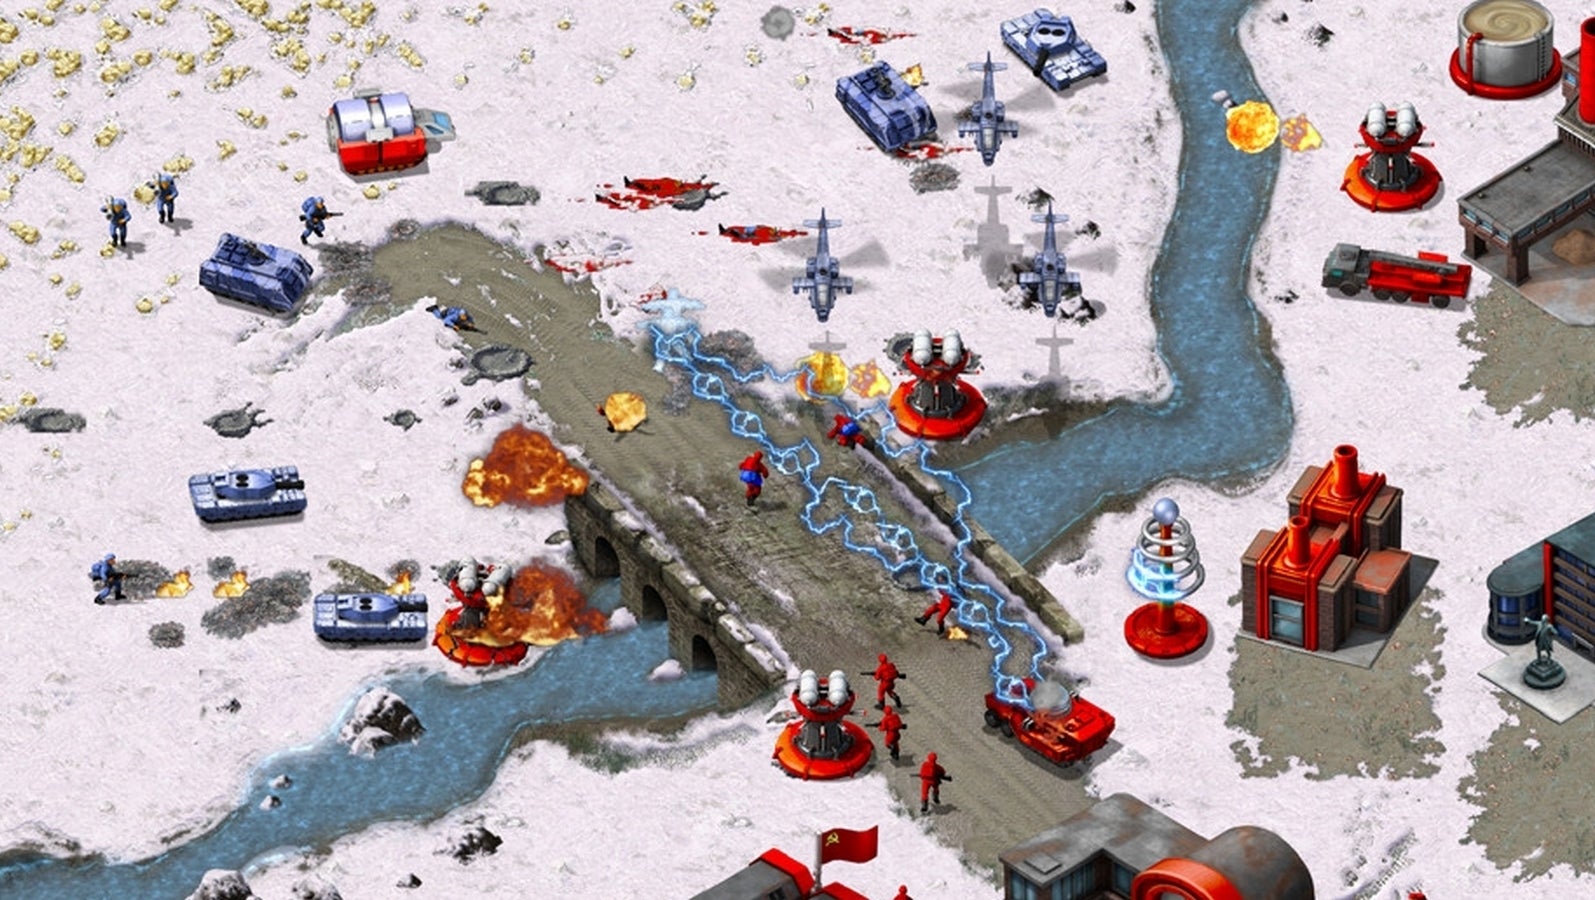 Bilder zu Soundtrack der Command & Conquer Remastered Collection veröffentlicht